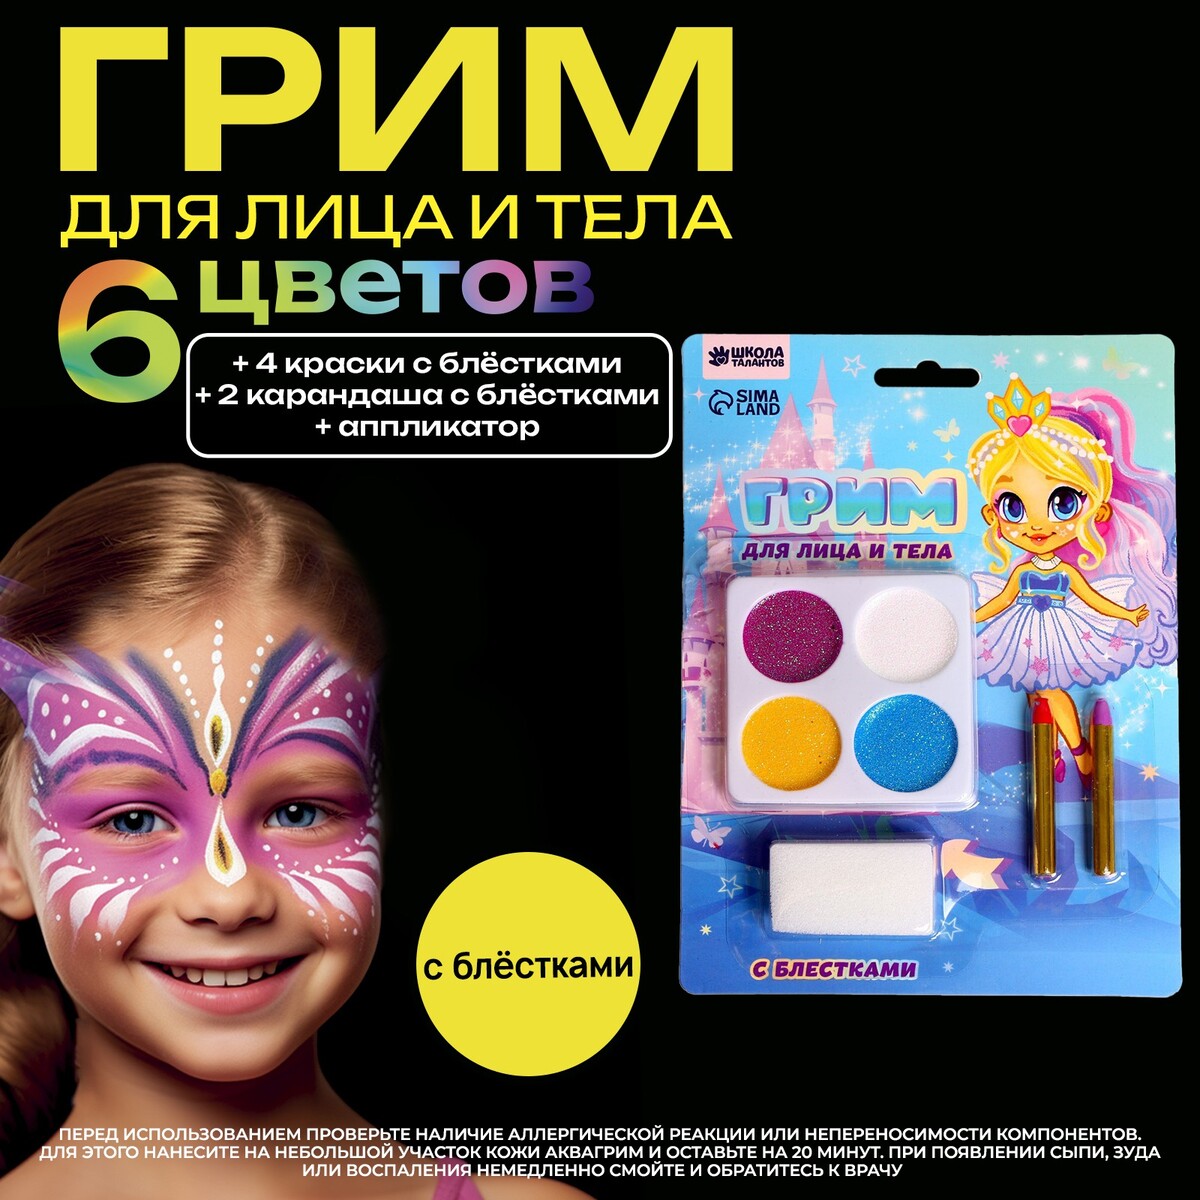 Грим для лица 4 цвета с блестками + 2 карандаша города россии раскрашиваем 42 персонажа по мотивам нашей родины